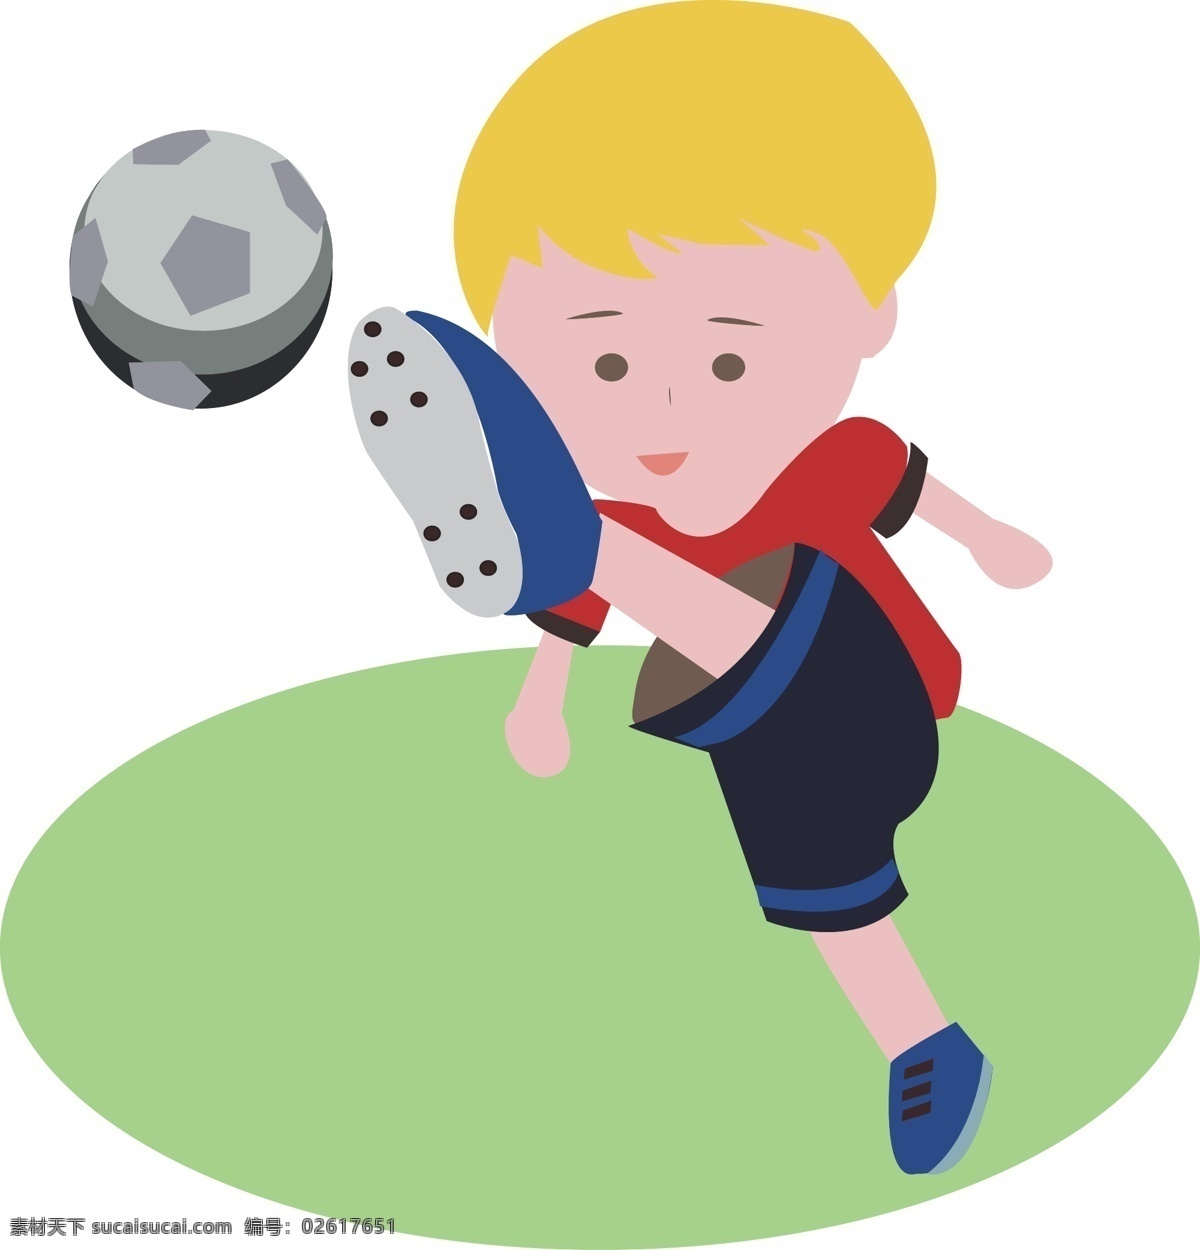 矢量 卡通 人物 踢 足球 c罗 插画 小朋友 小孩 儿童 学生运动 体育活动 运动员 小 男孩 球员 球赛